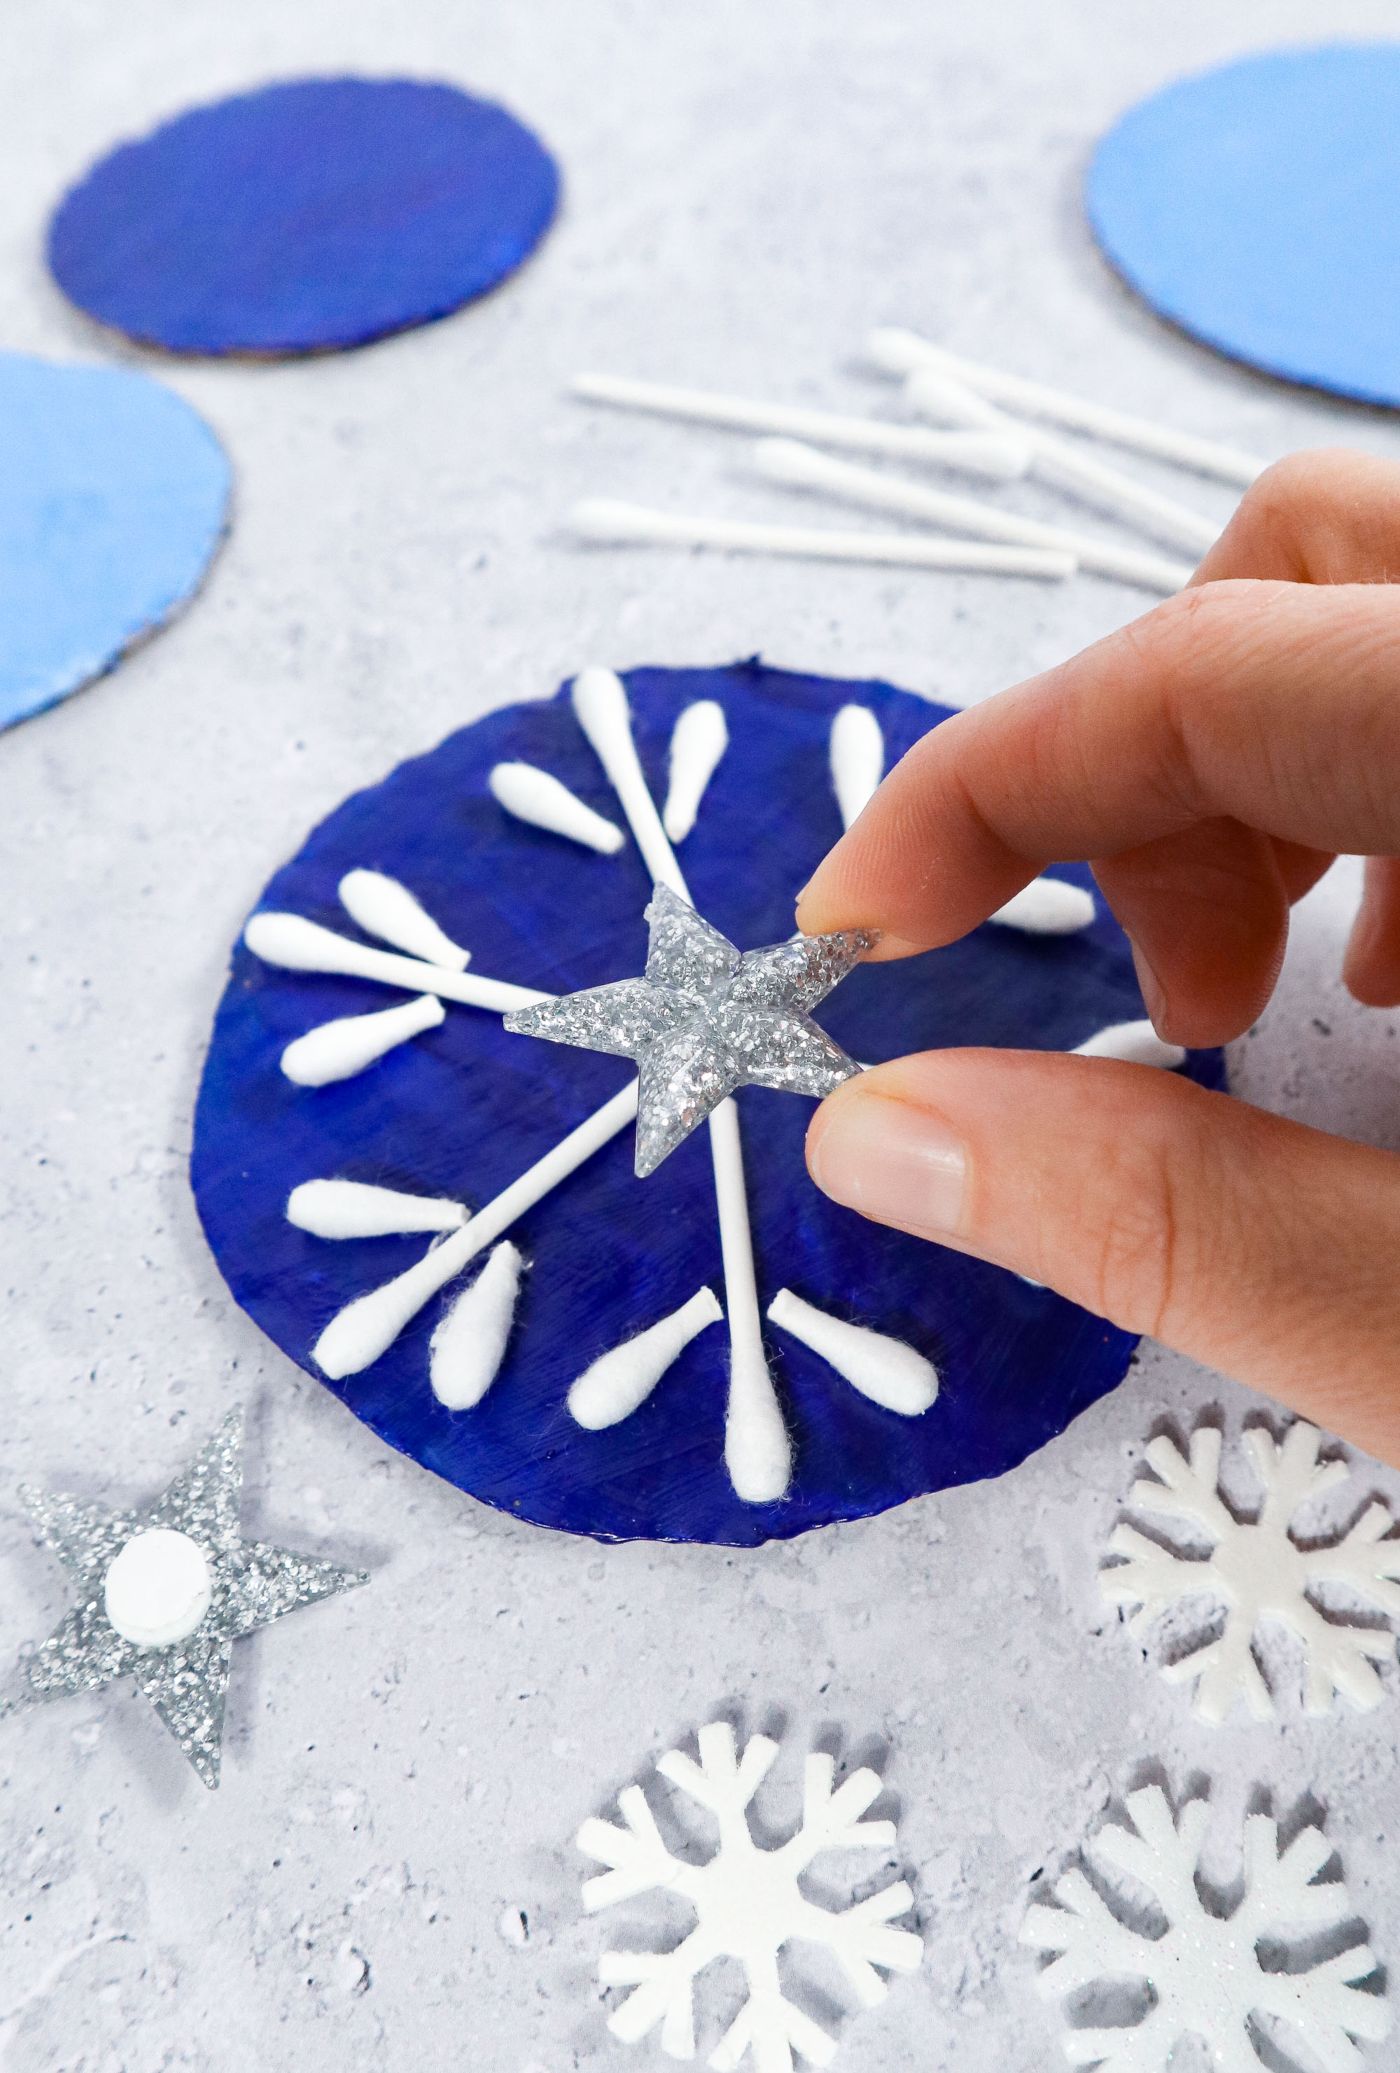 Q-Tip Snowflakes craft idea